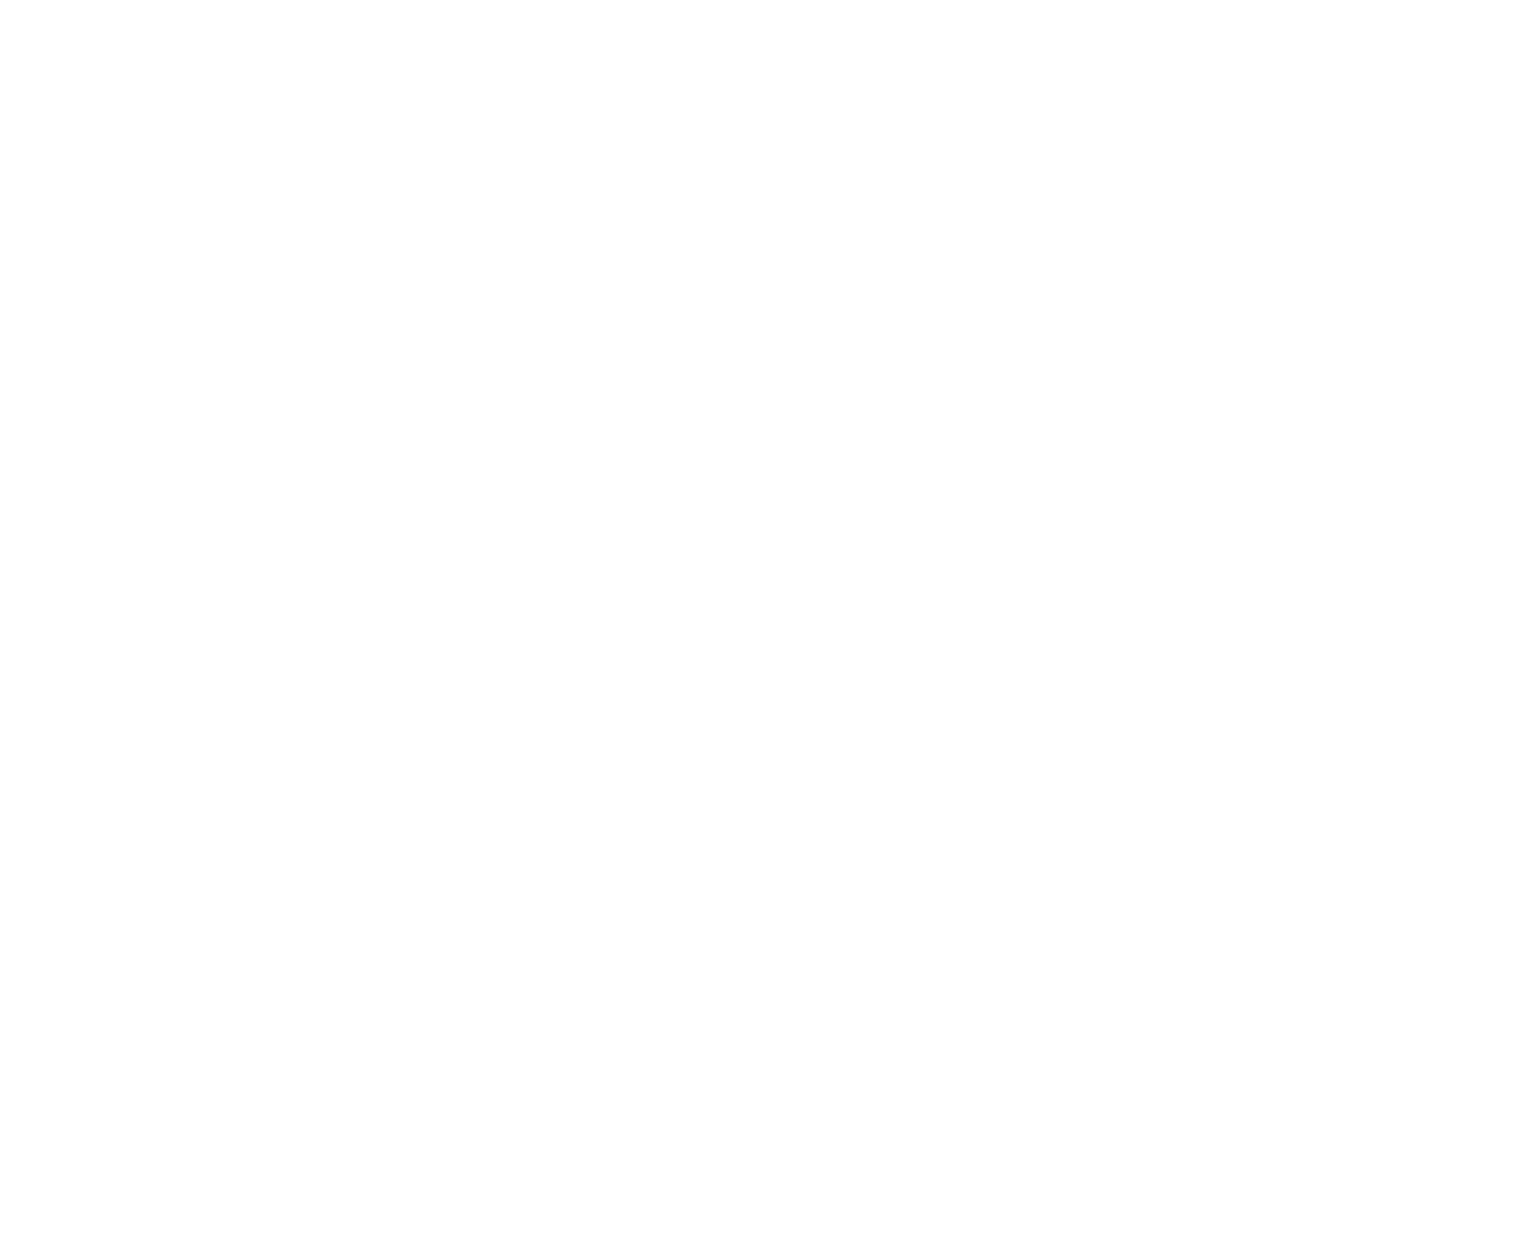 Genus logo for dark backgrounds (transparent PNG)